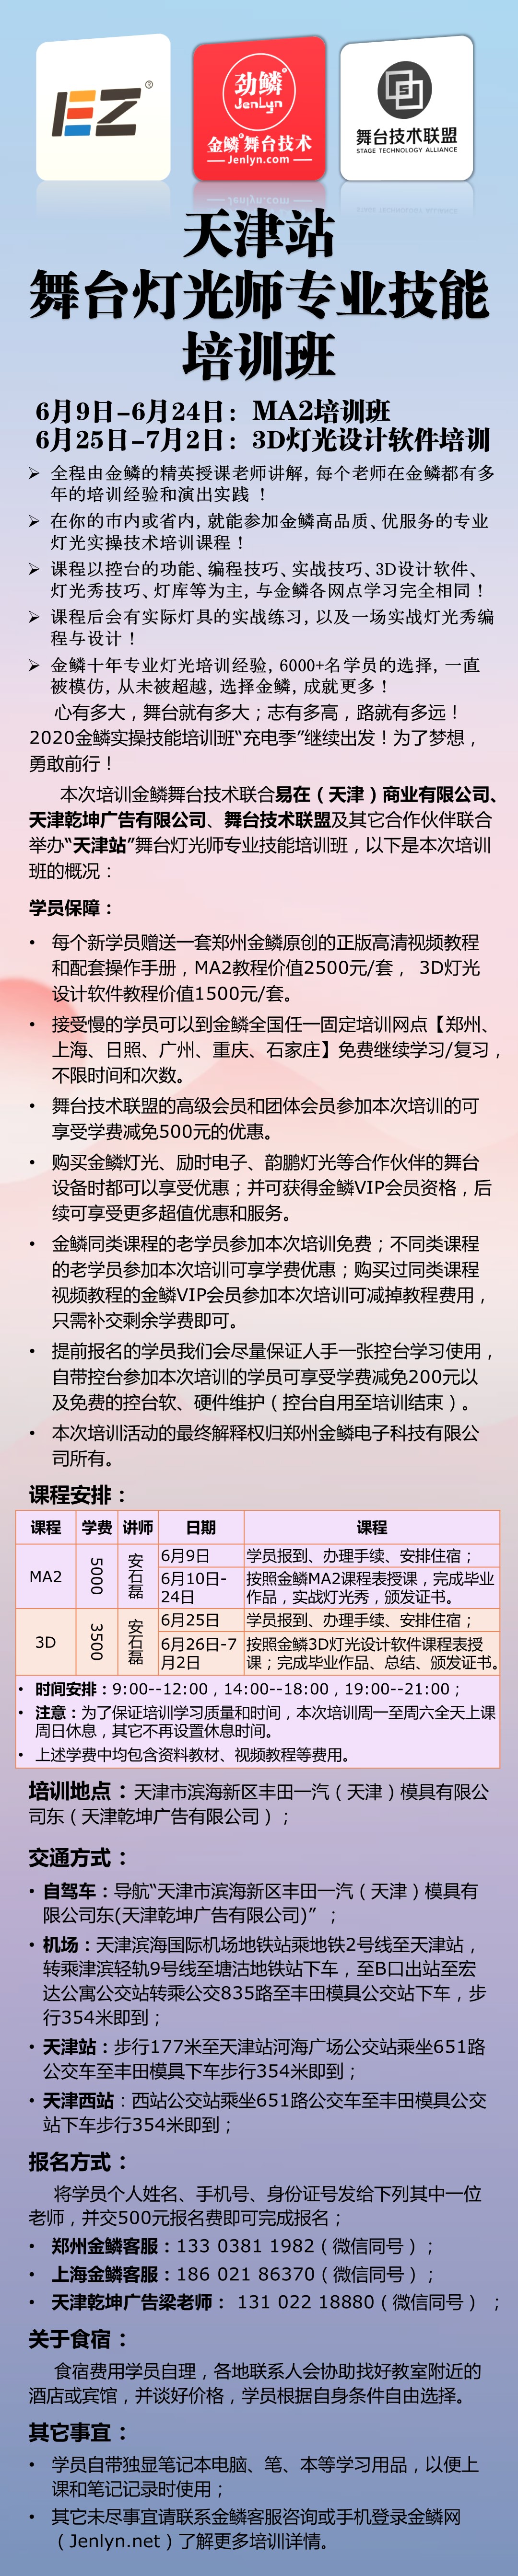 20200609天津站培训.JPG